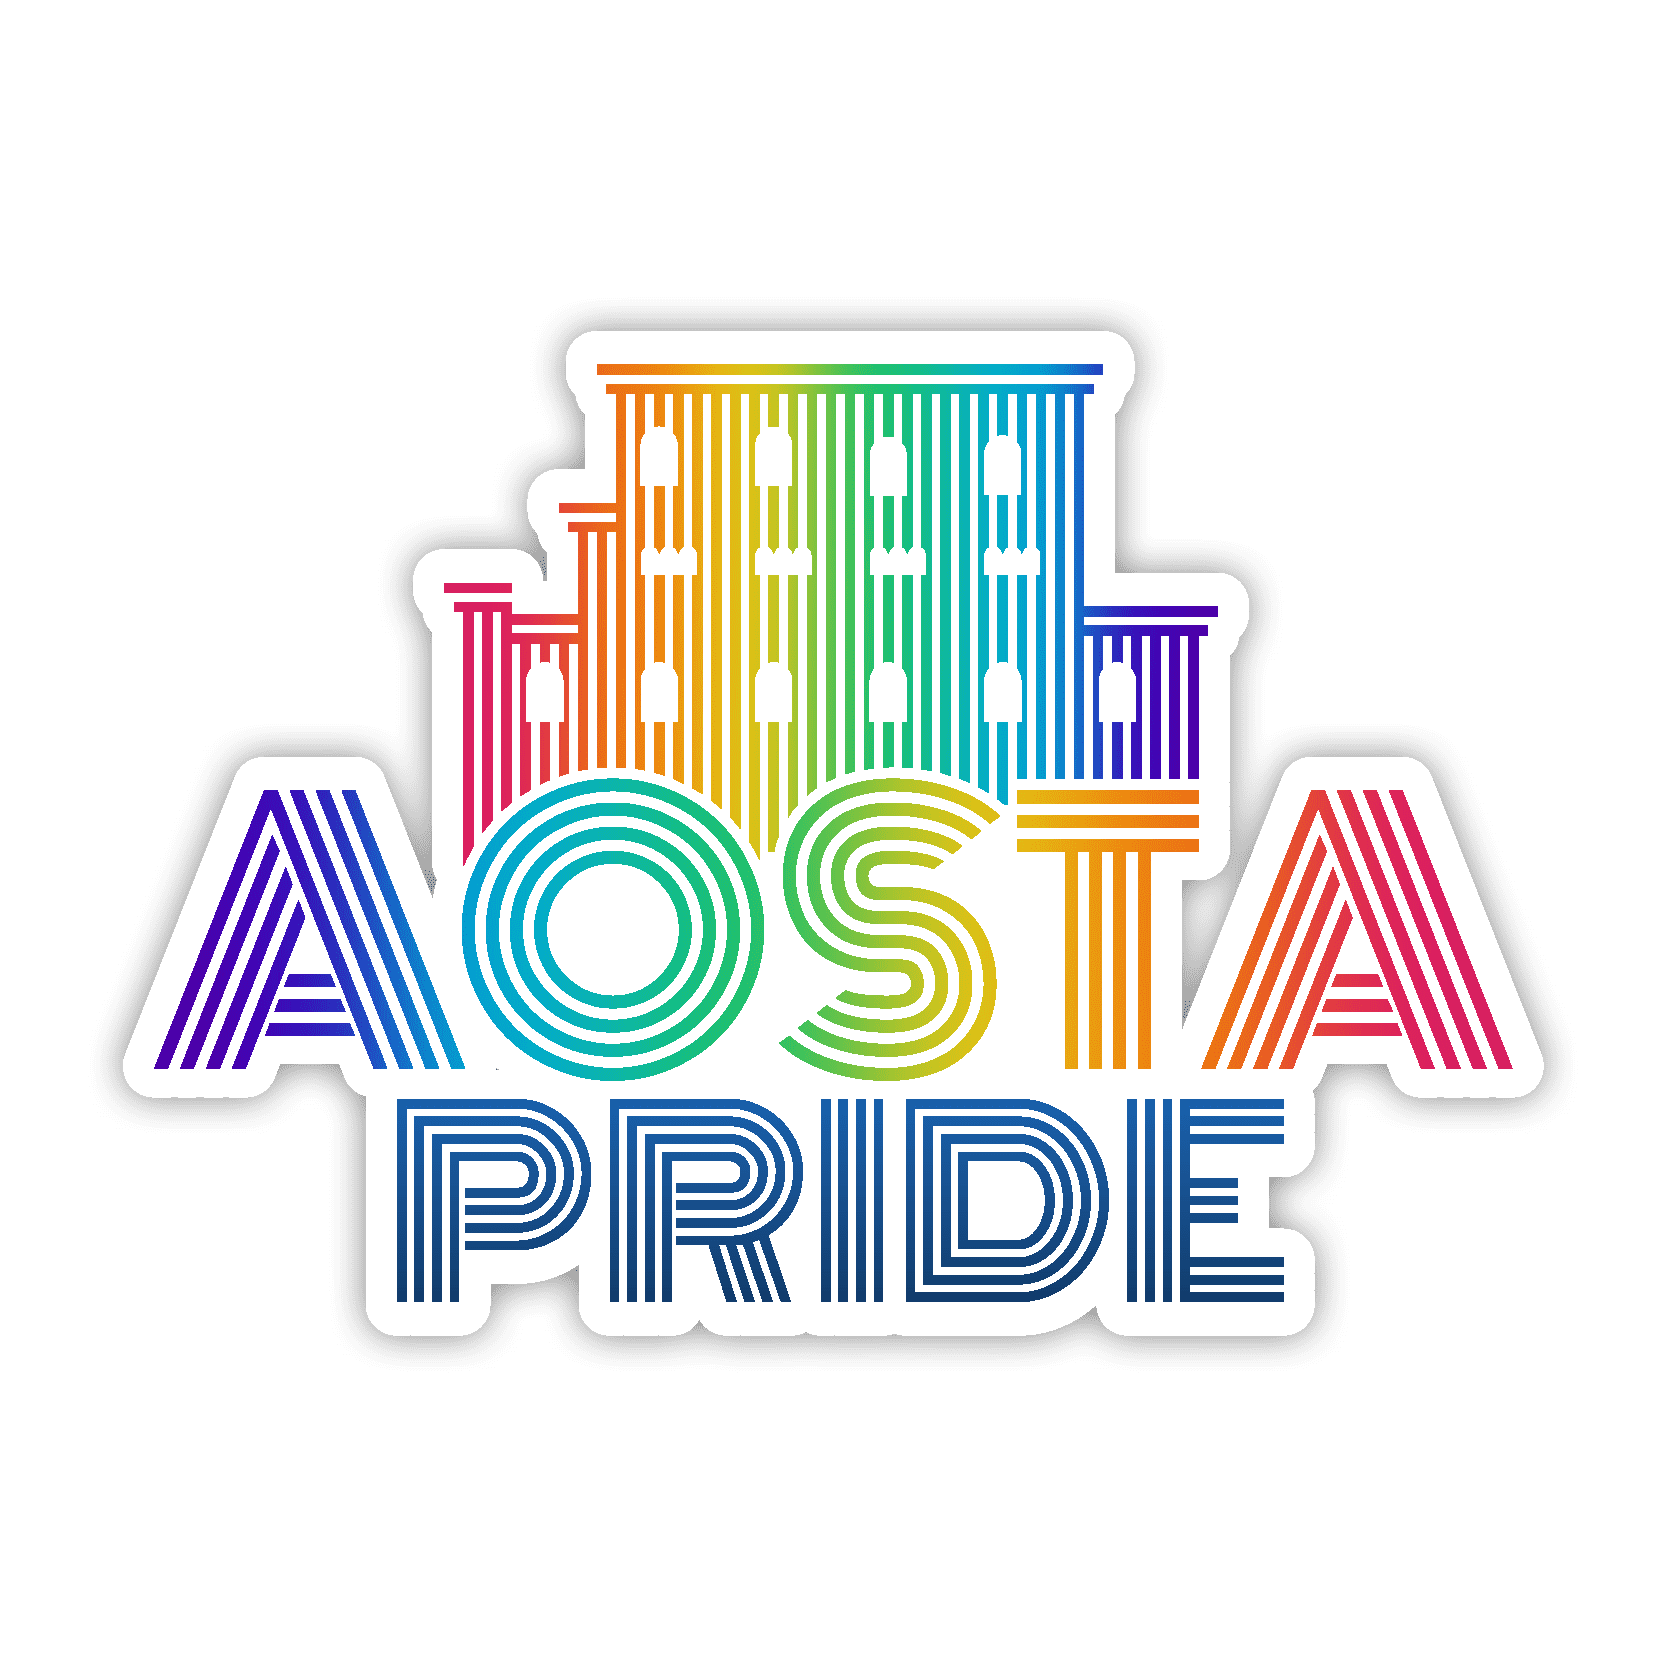 Aosta Pride